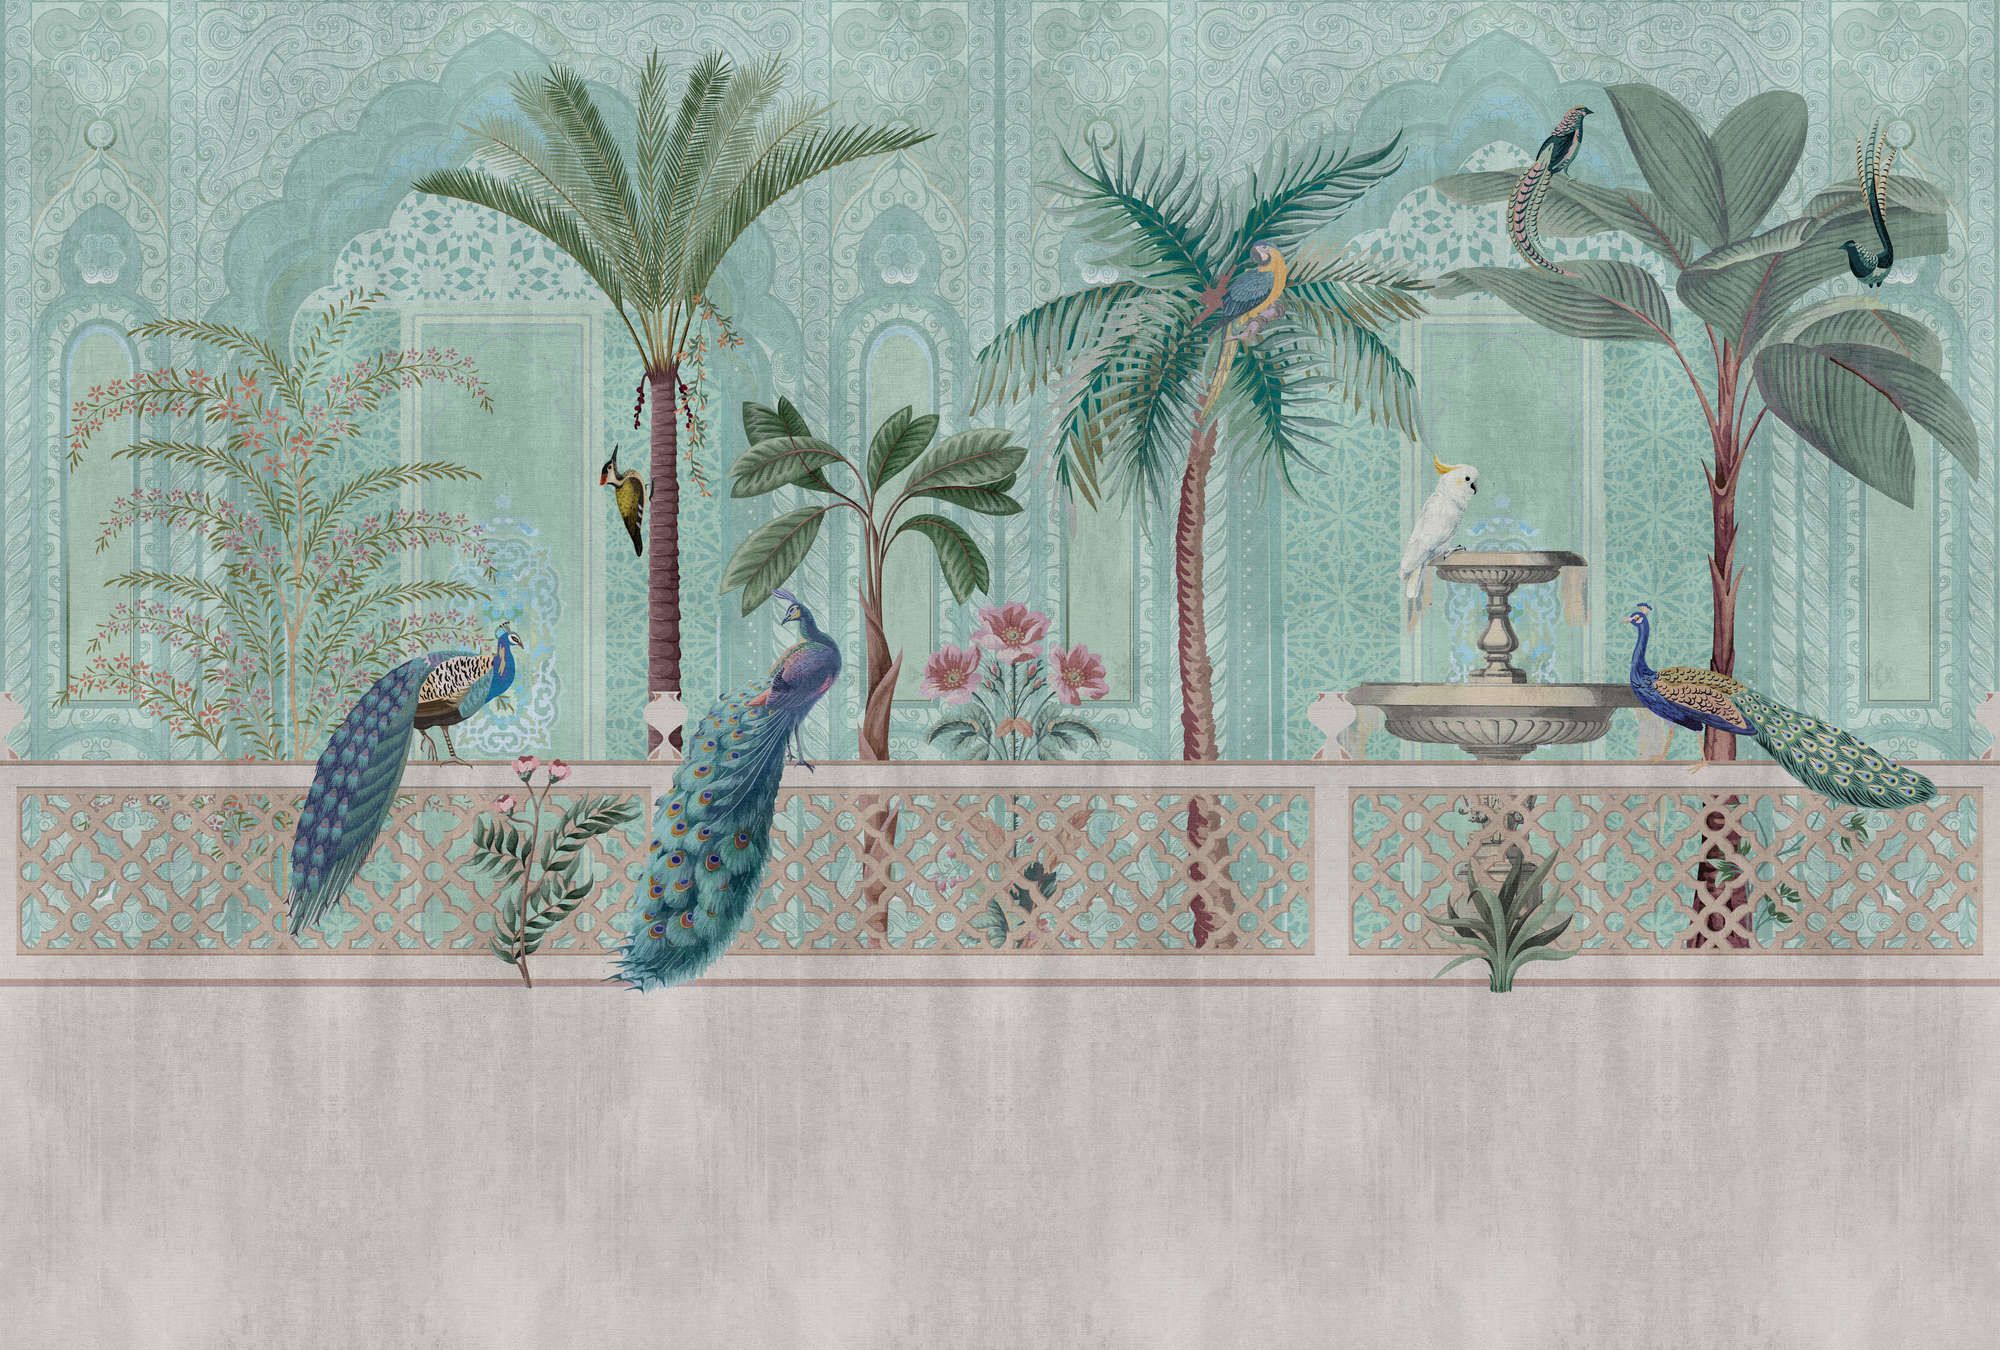             Fotomural »pavo« - Pájaros, palmeras y fuentes - Verde, azul con estructura de tapiz | no tejido mate, liso
        